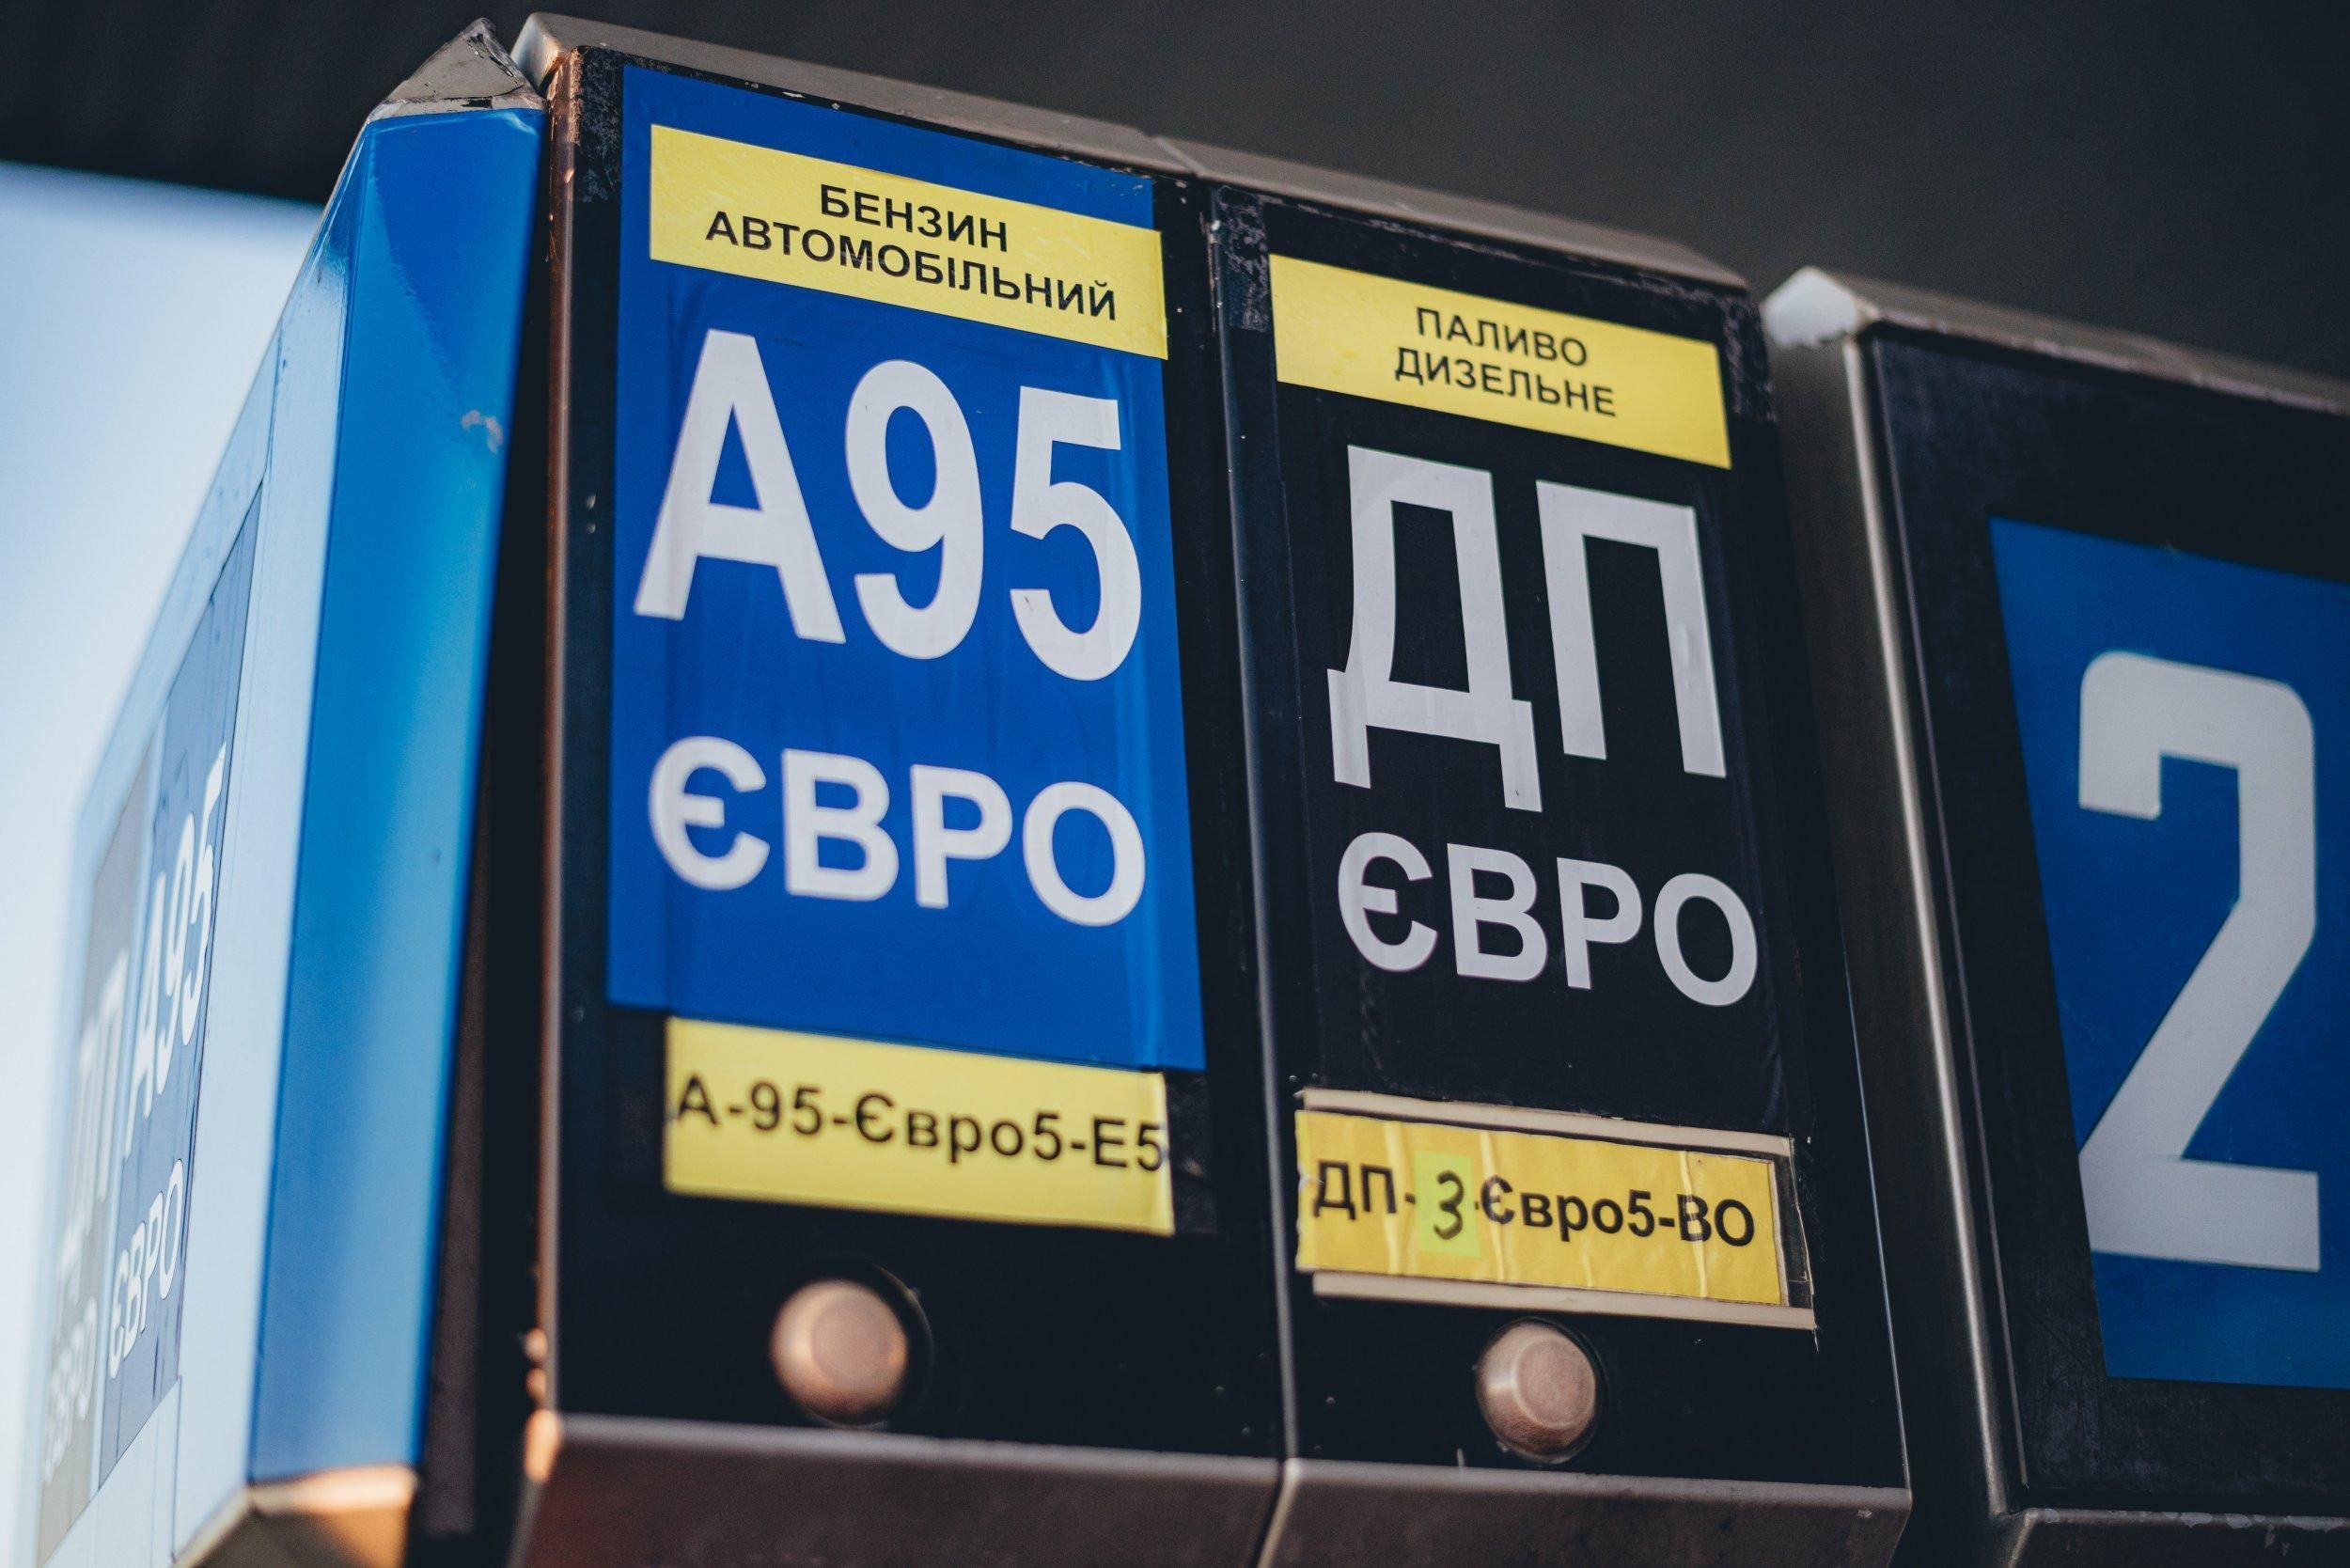 Бензин и дизель могут подорожать: Минэкономики установило новую предельную цену - Экономические новости Украины - Экономика